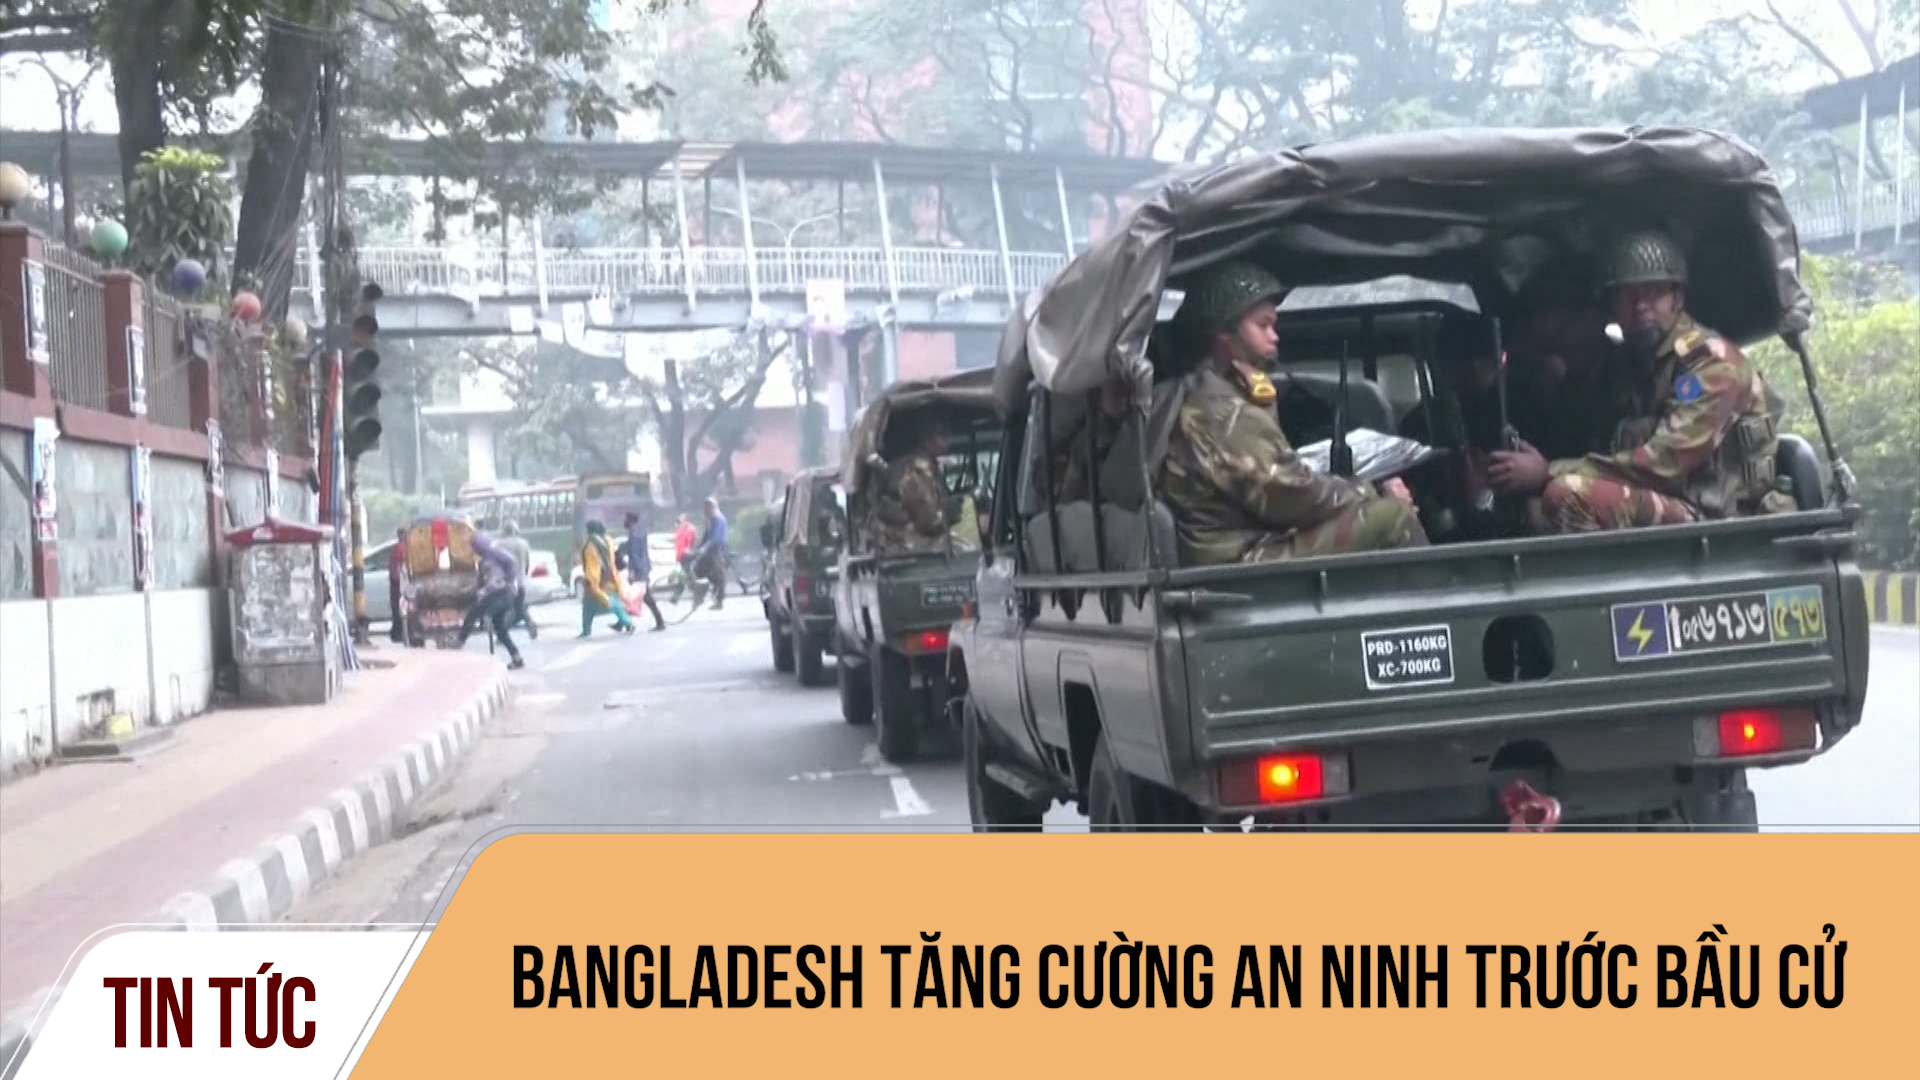 Bangladesh tăng cường an ninh trước bầu cử